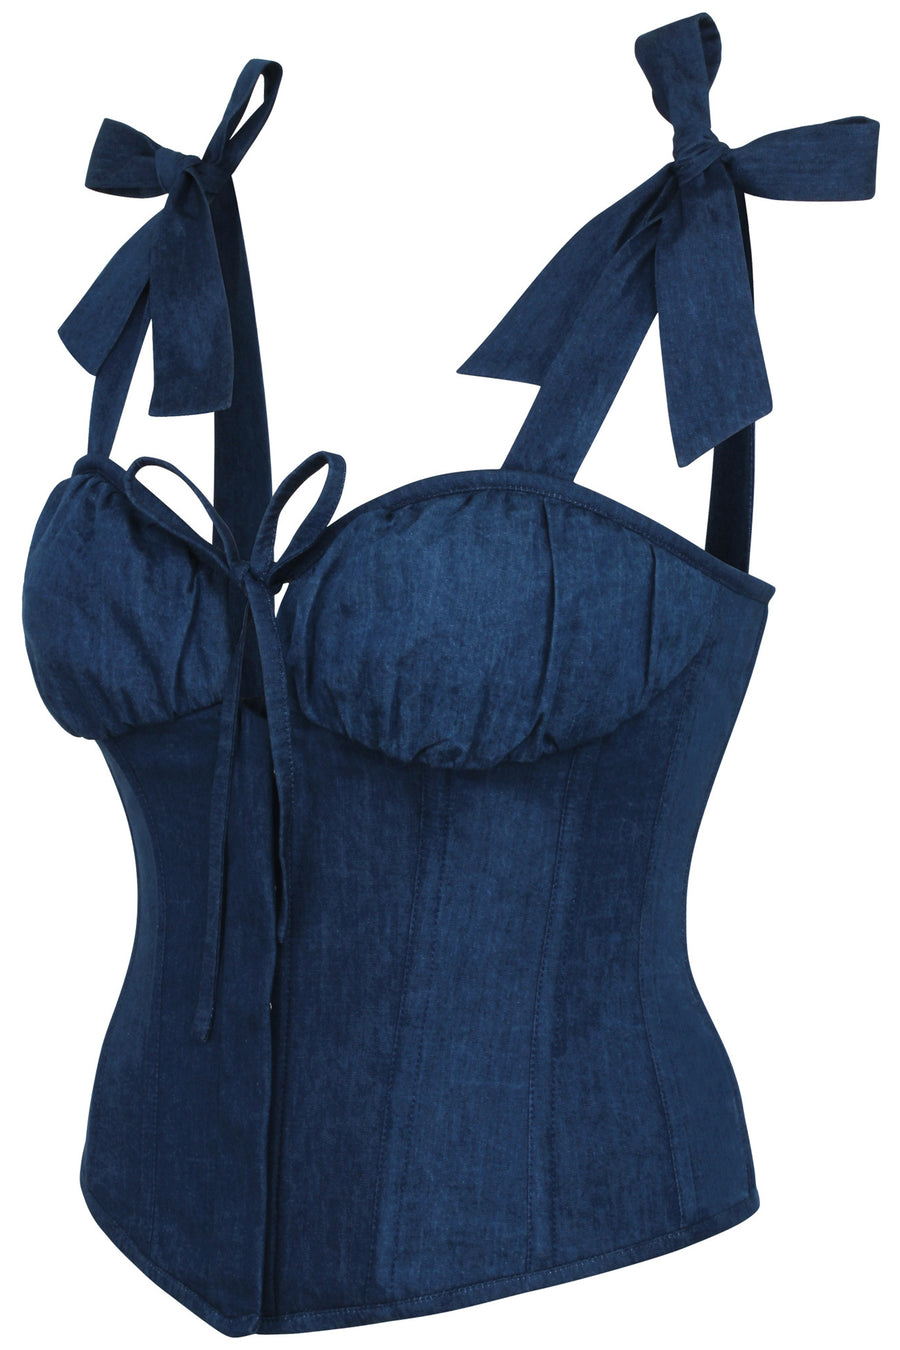 https://corset-story.com/cdn/shop/products/SC-030-side_900x.jpg?v=1671627995